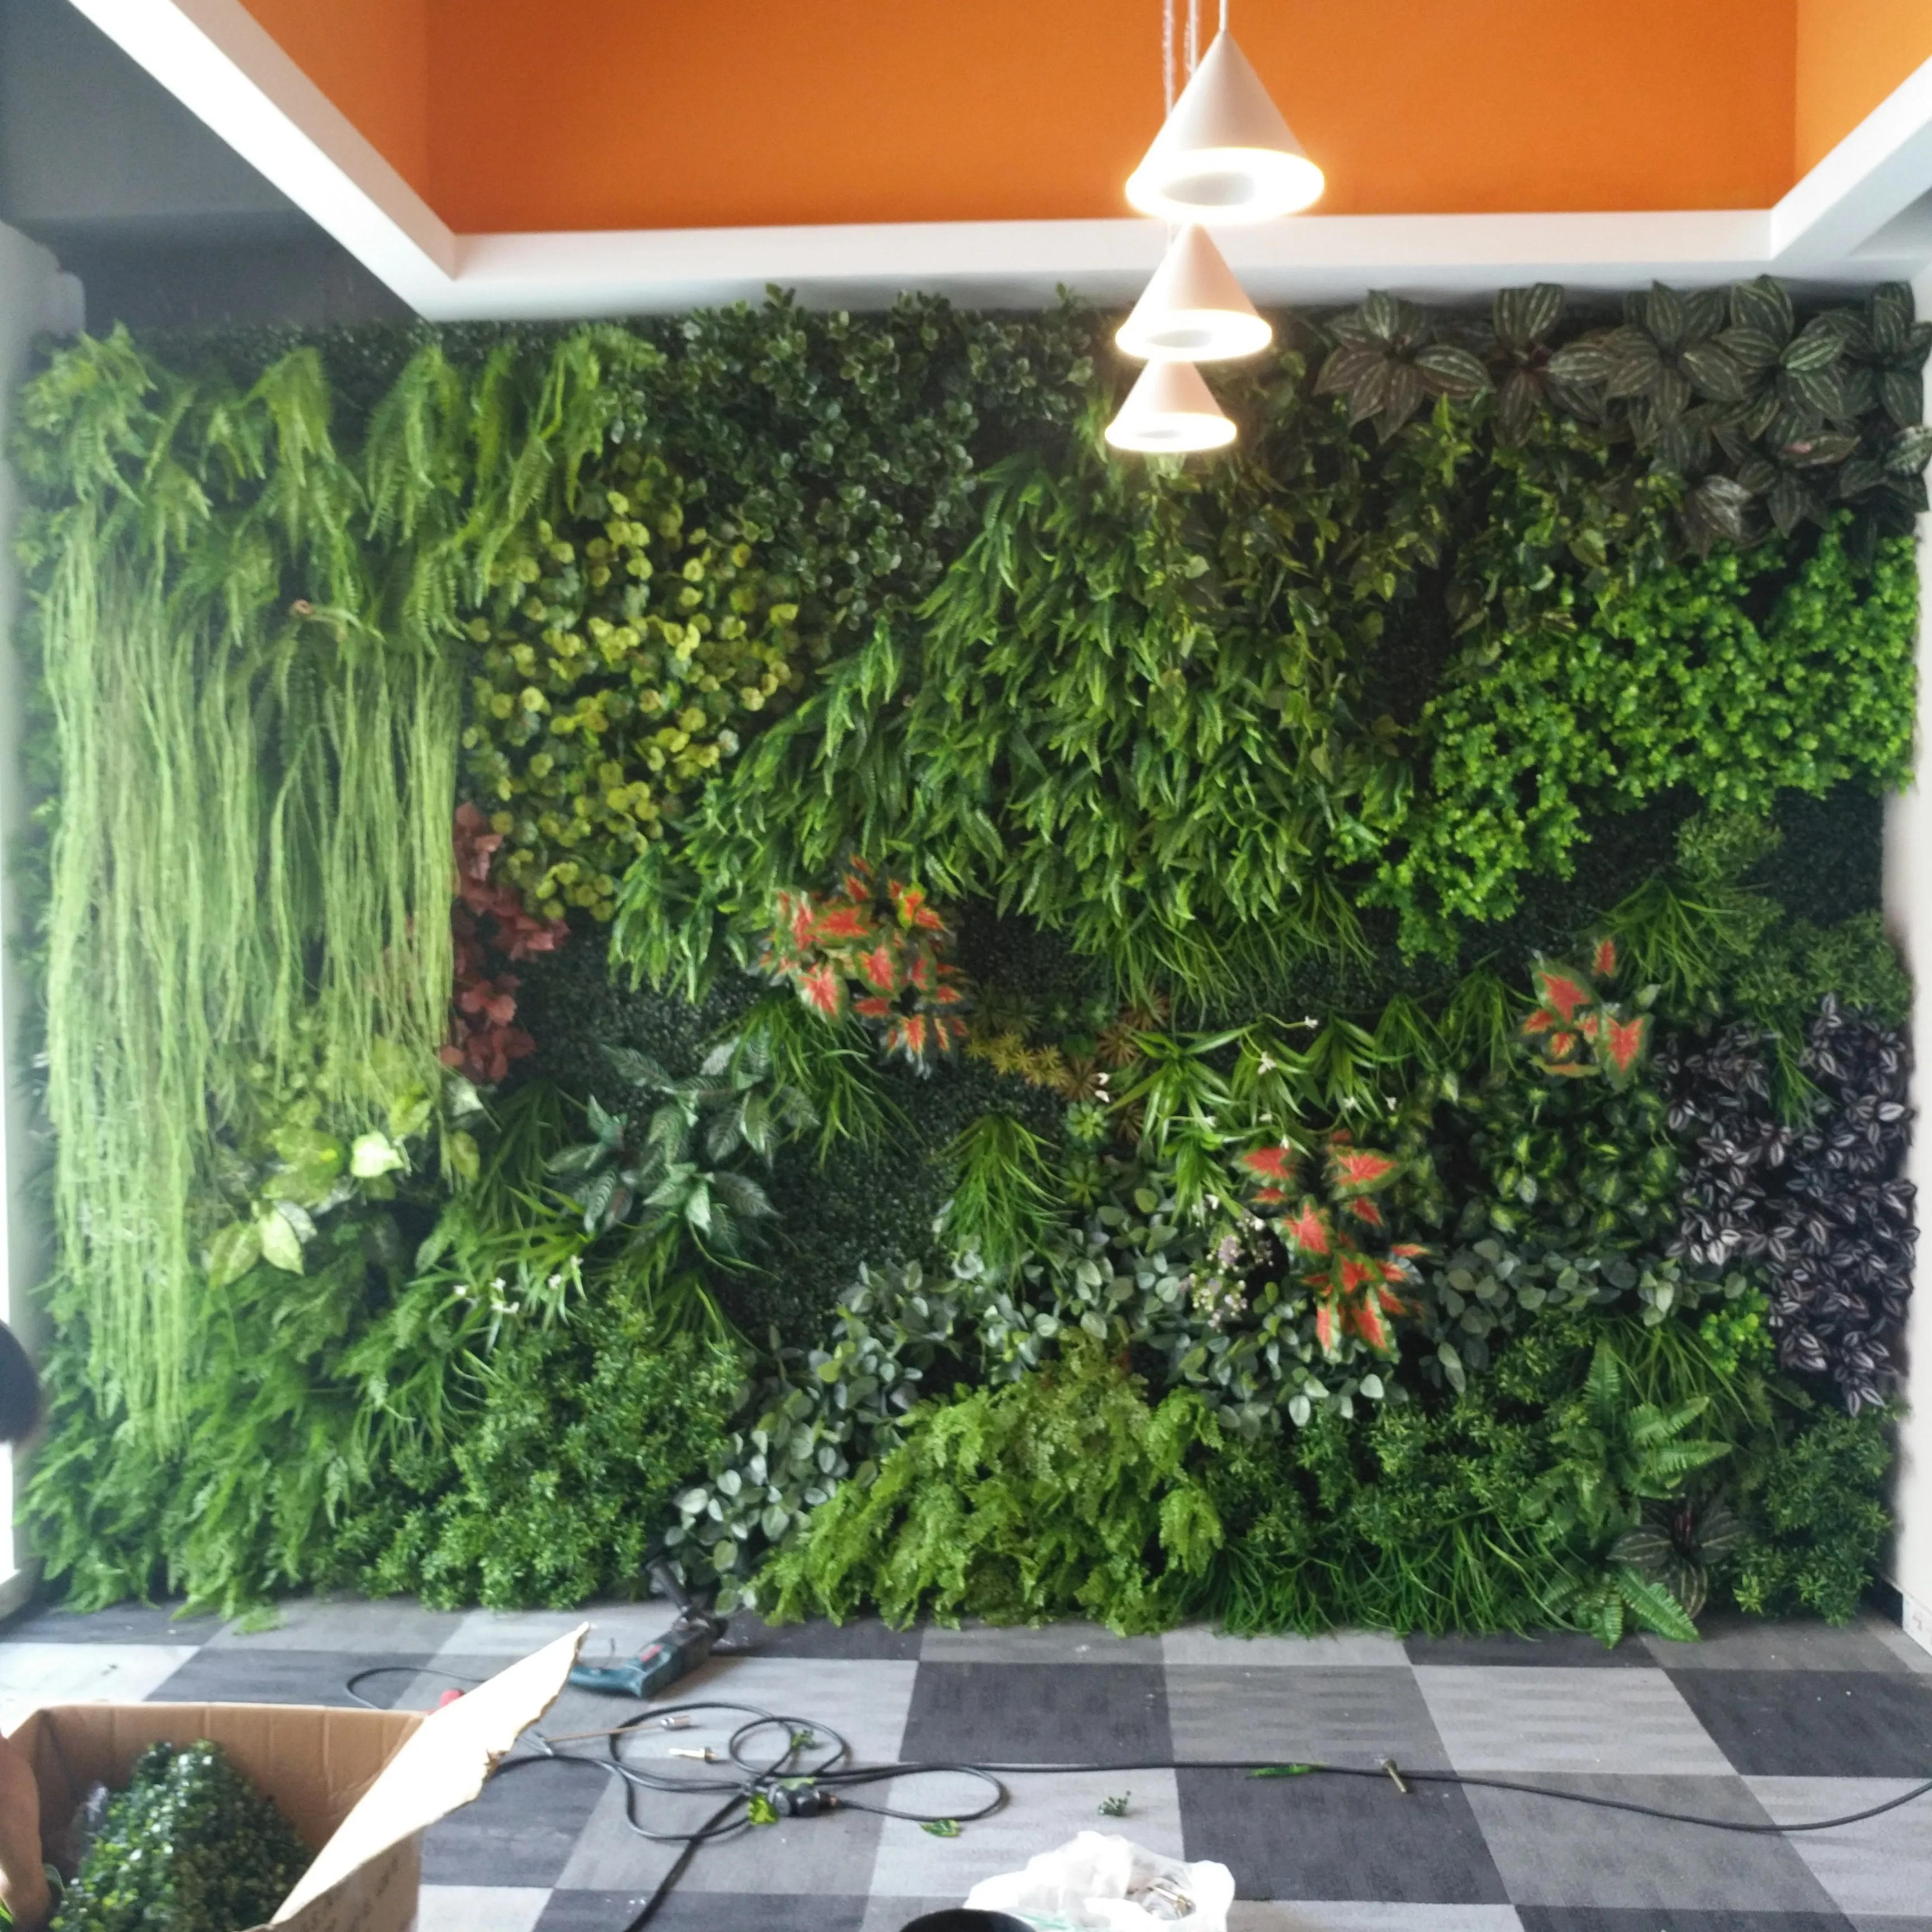 Производители зеленых стен, производители искусственных зеленых стен, зеленый настенный модуль, вертикальный сад